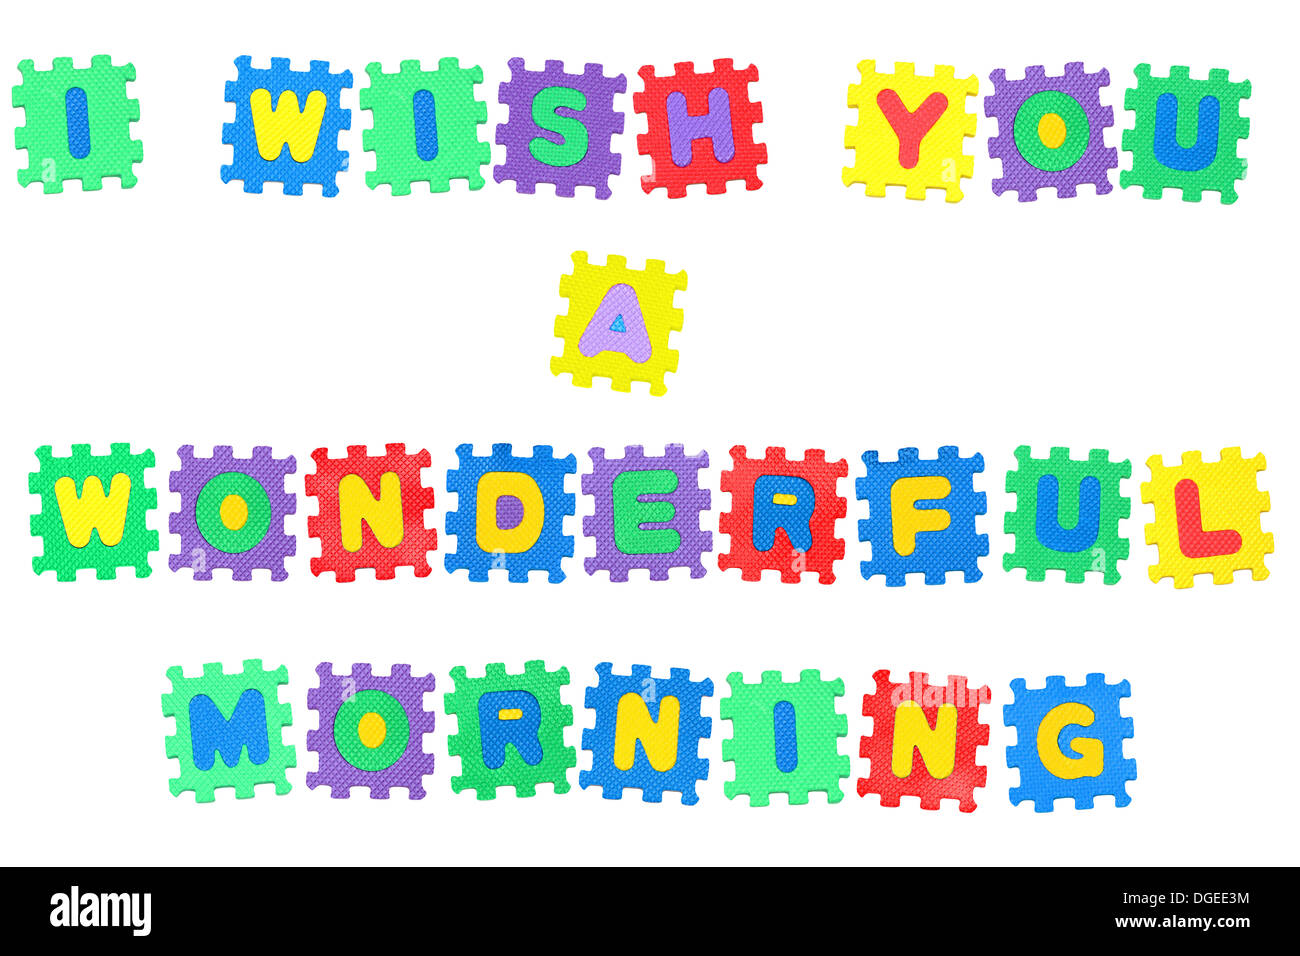 Nachricht, ich wünsche Ihnen einen wunderschönen guten Morgen aus Buchstaben Puzzle, isoliert auf weißem Hintergrund. Stockfoto